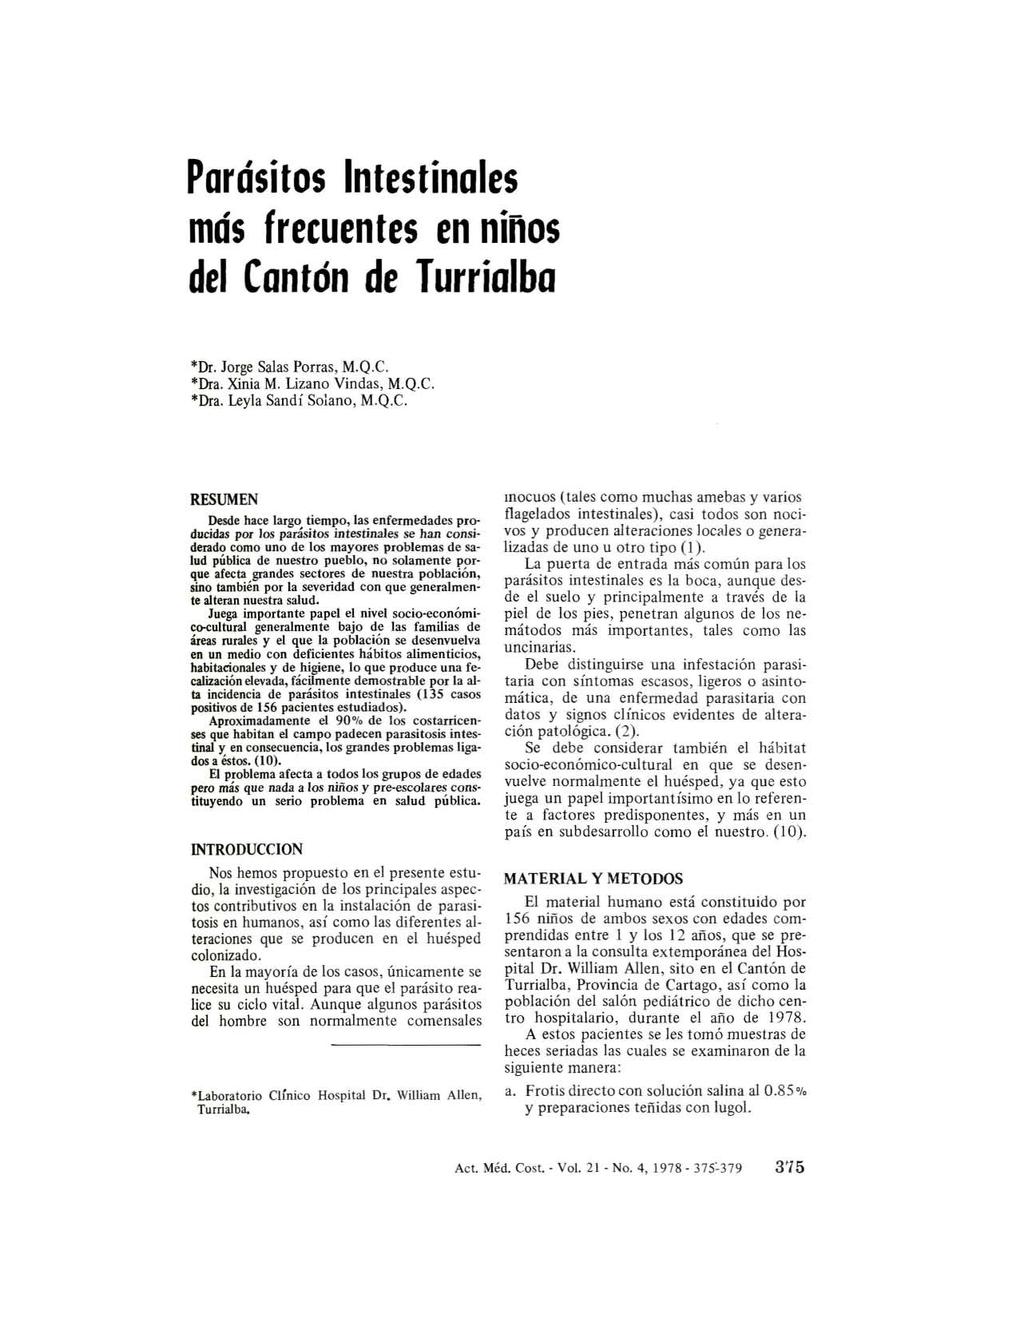 Parósitos Intestinales mós frecuentes en ninos del Co